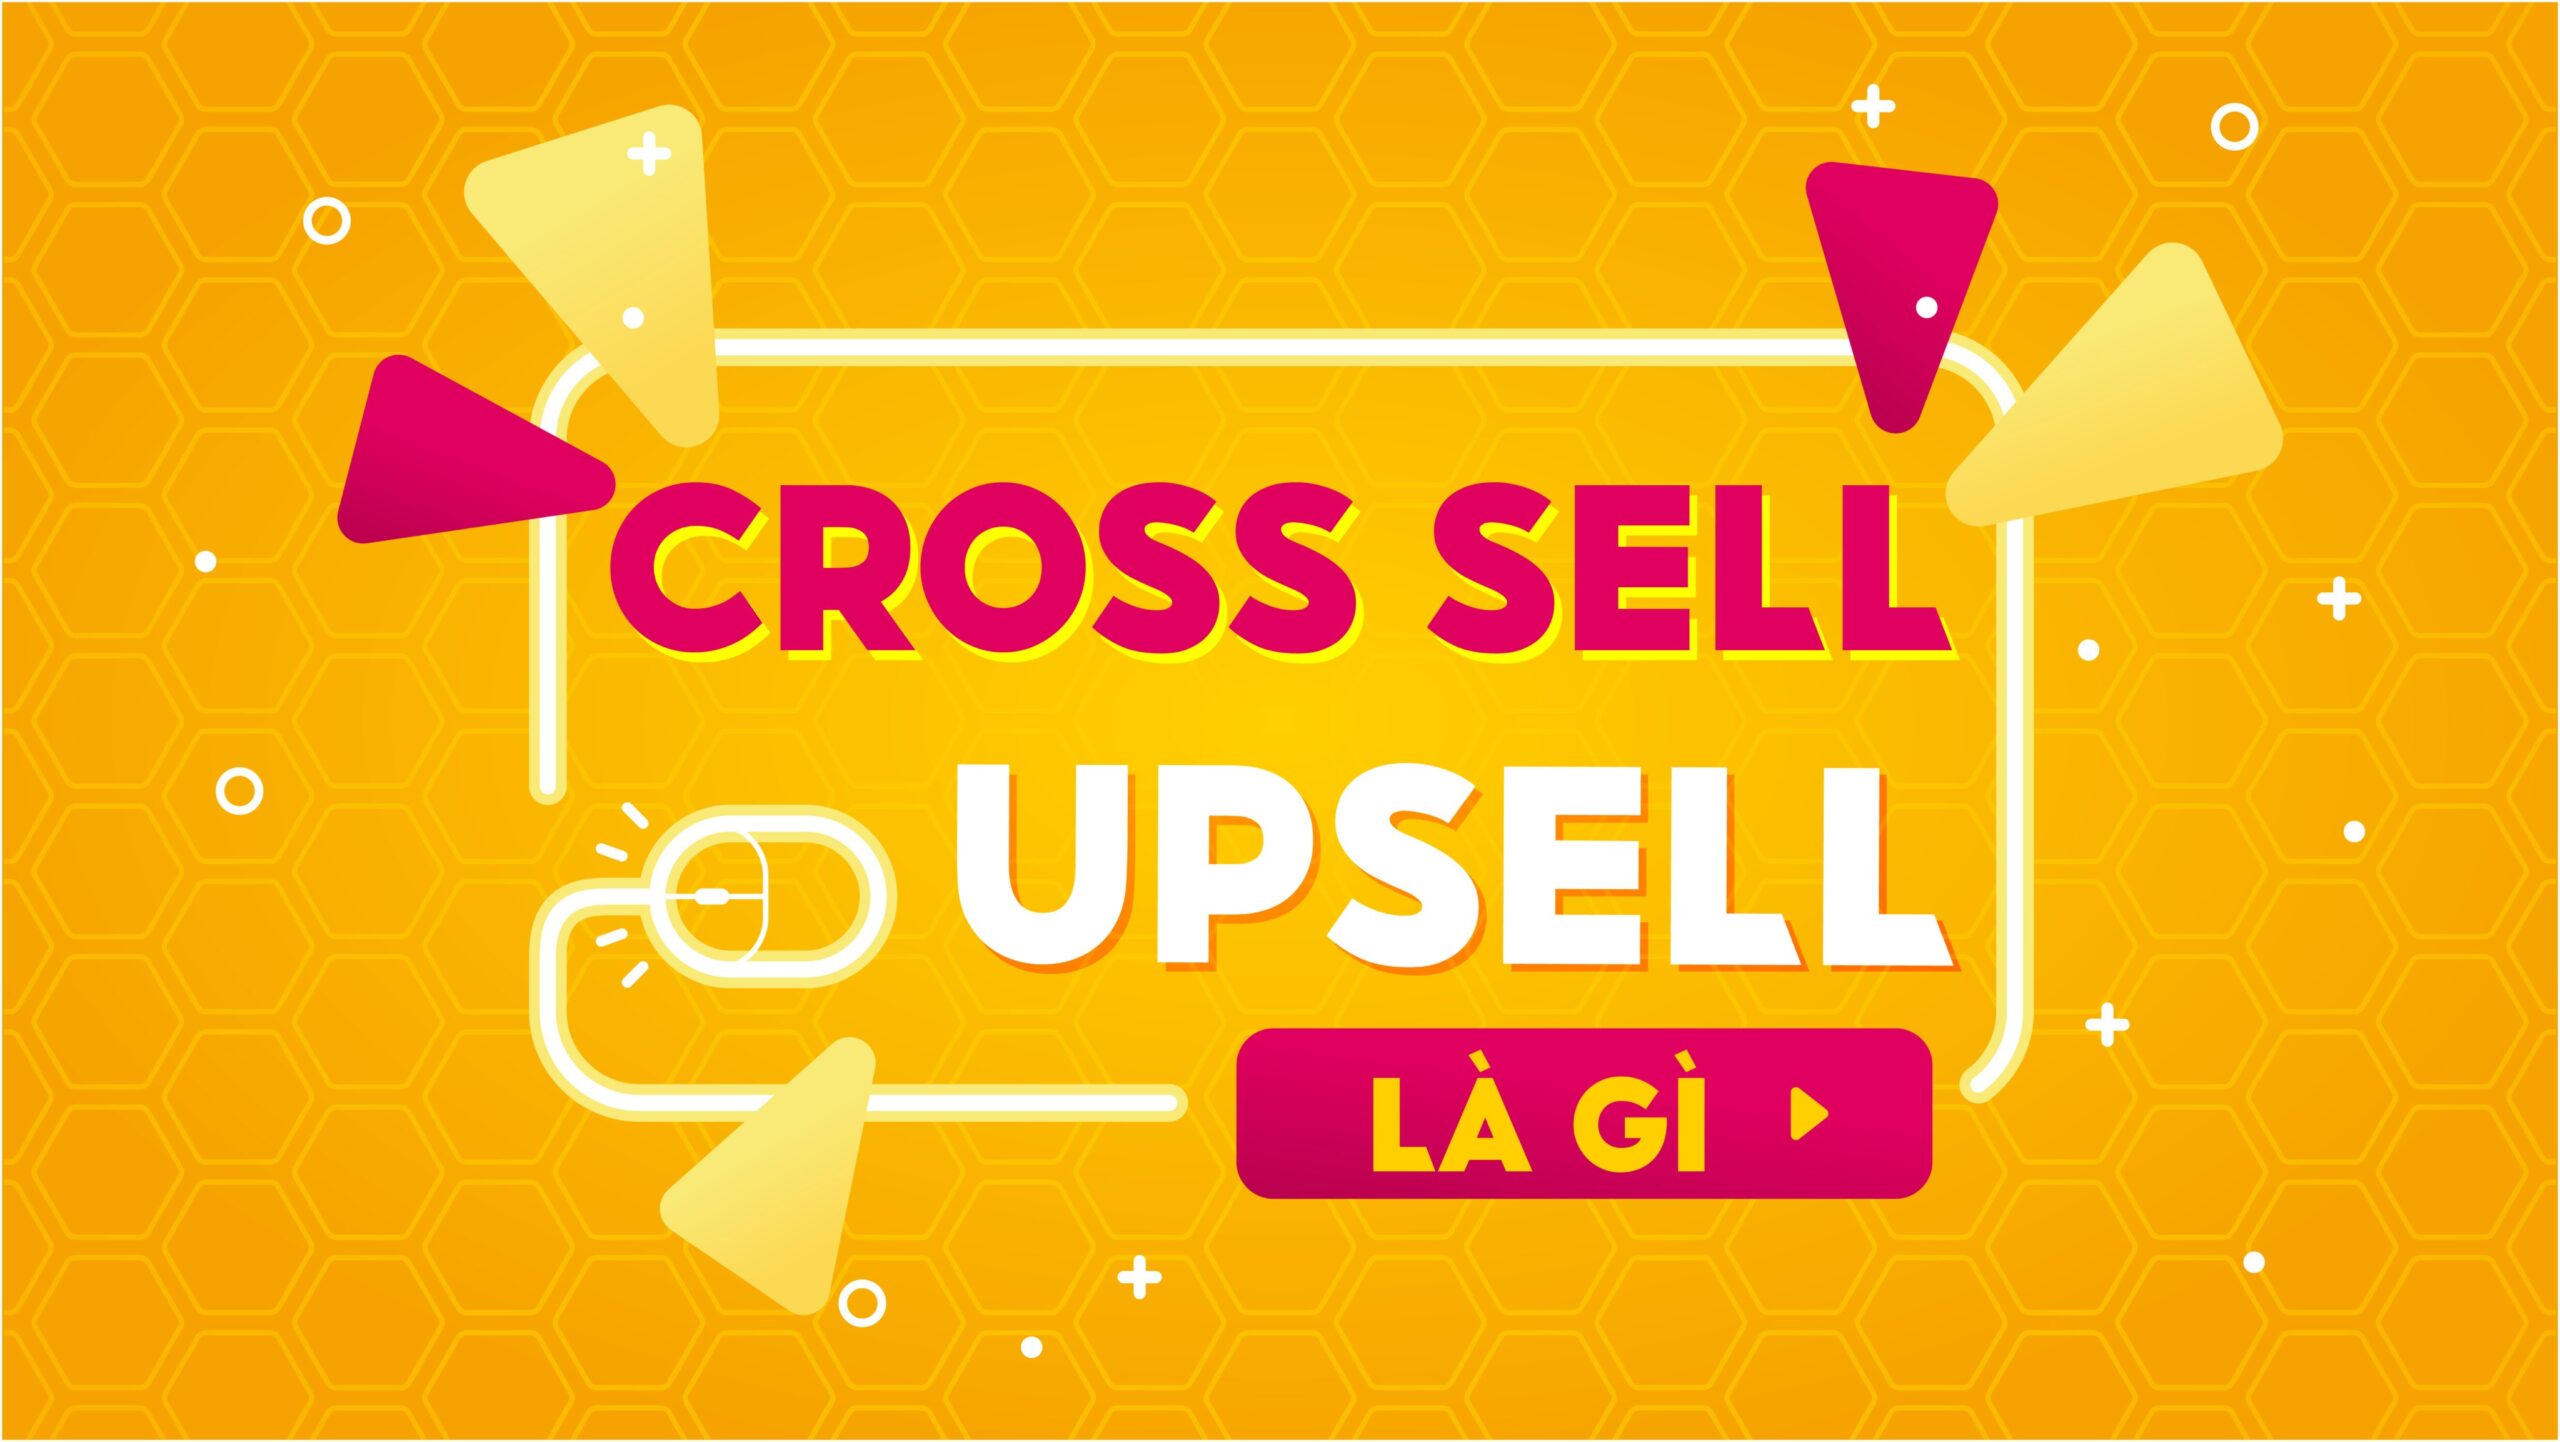 Upsell là gì? Cross sell là gì?